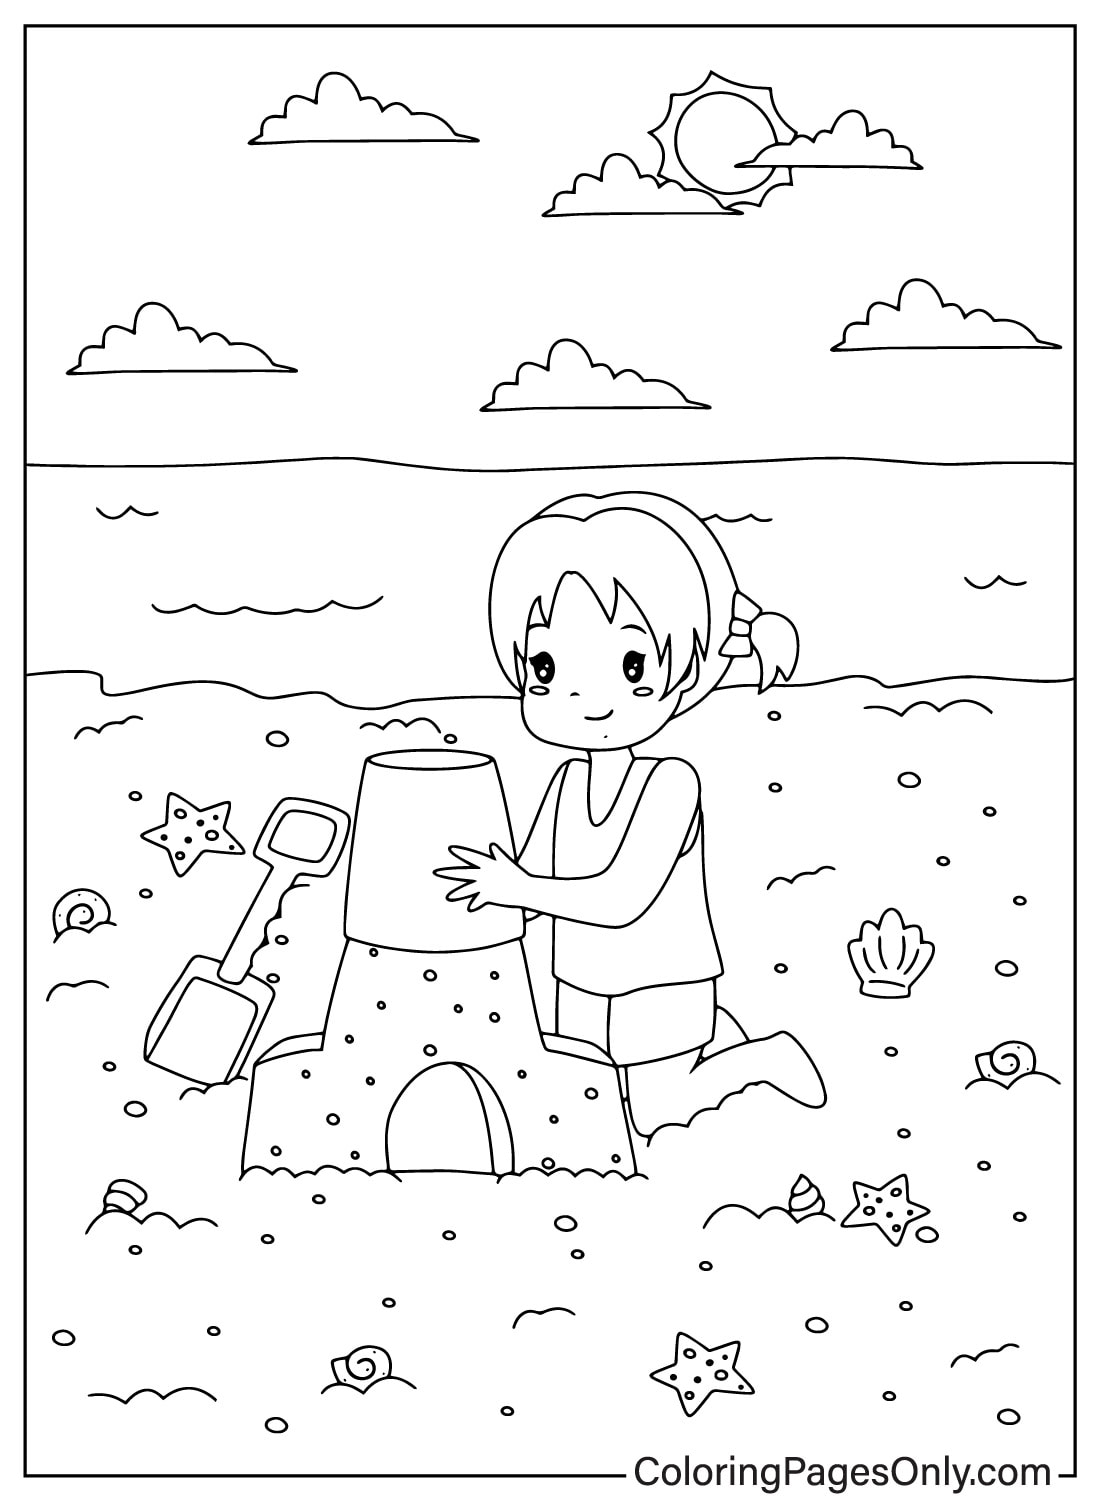 Маленькая девочка строит замок из песка на пляже